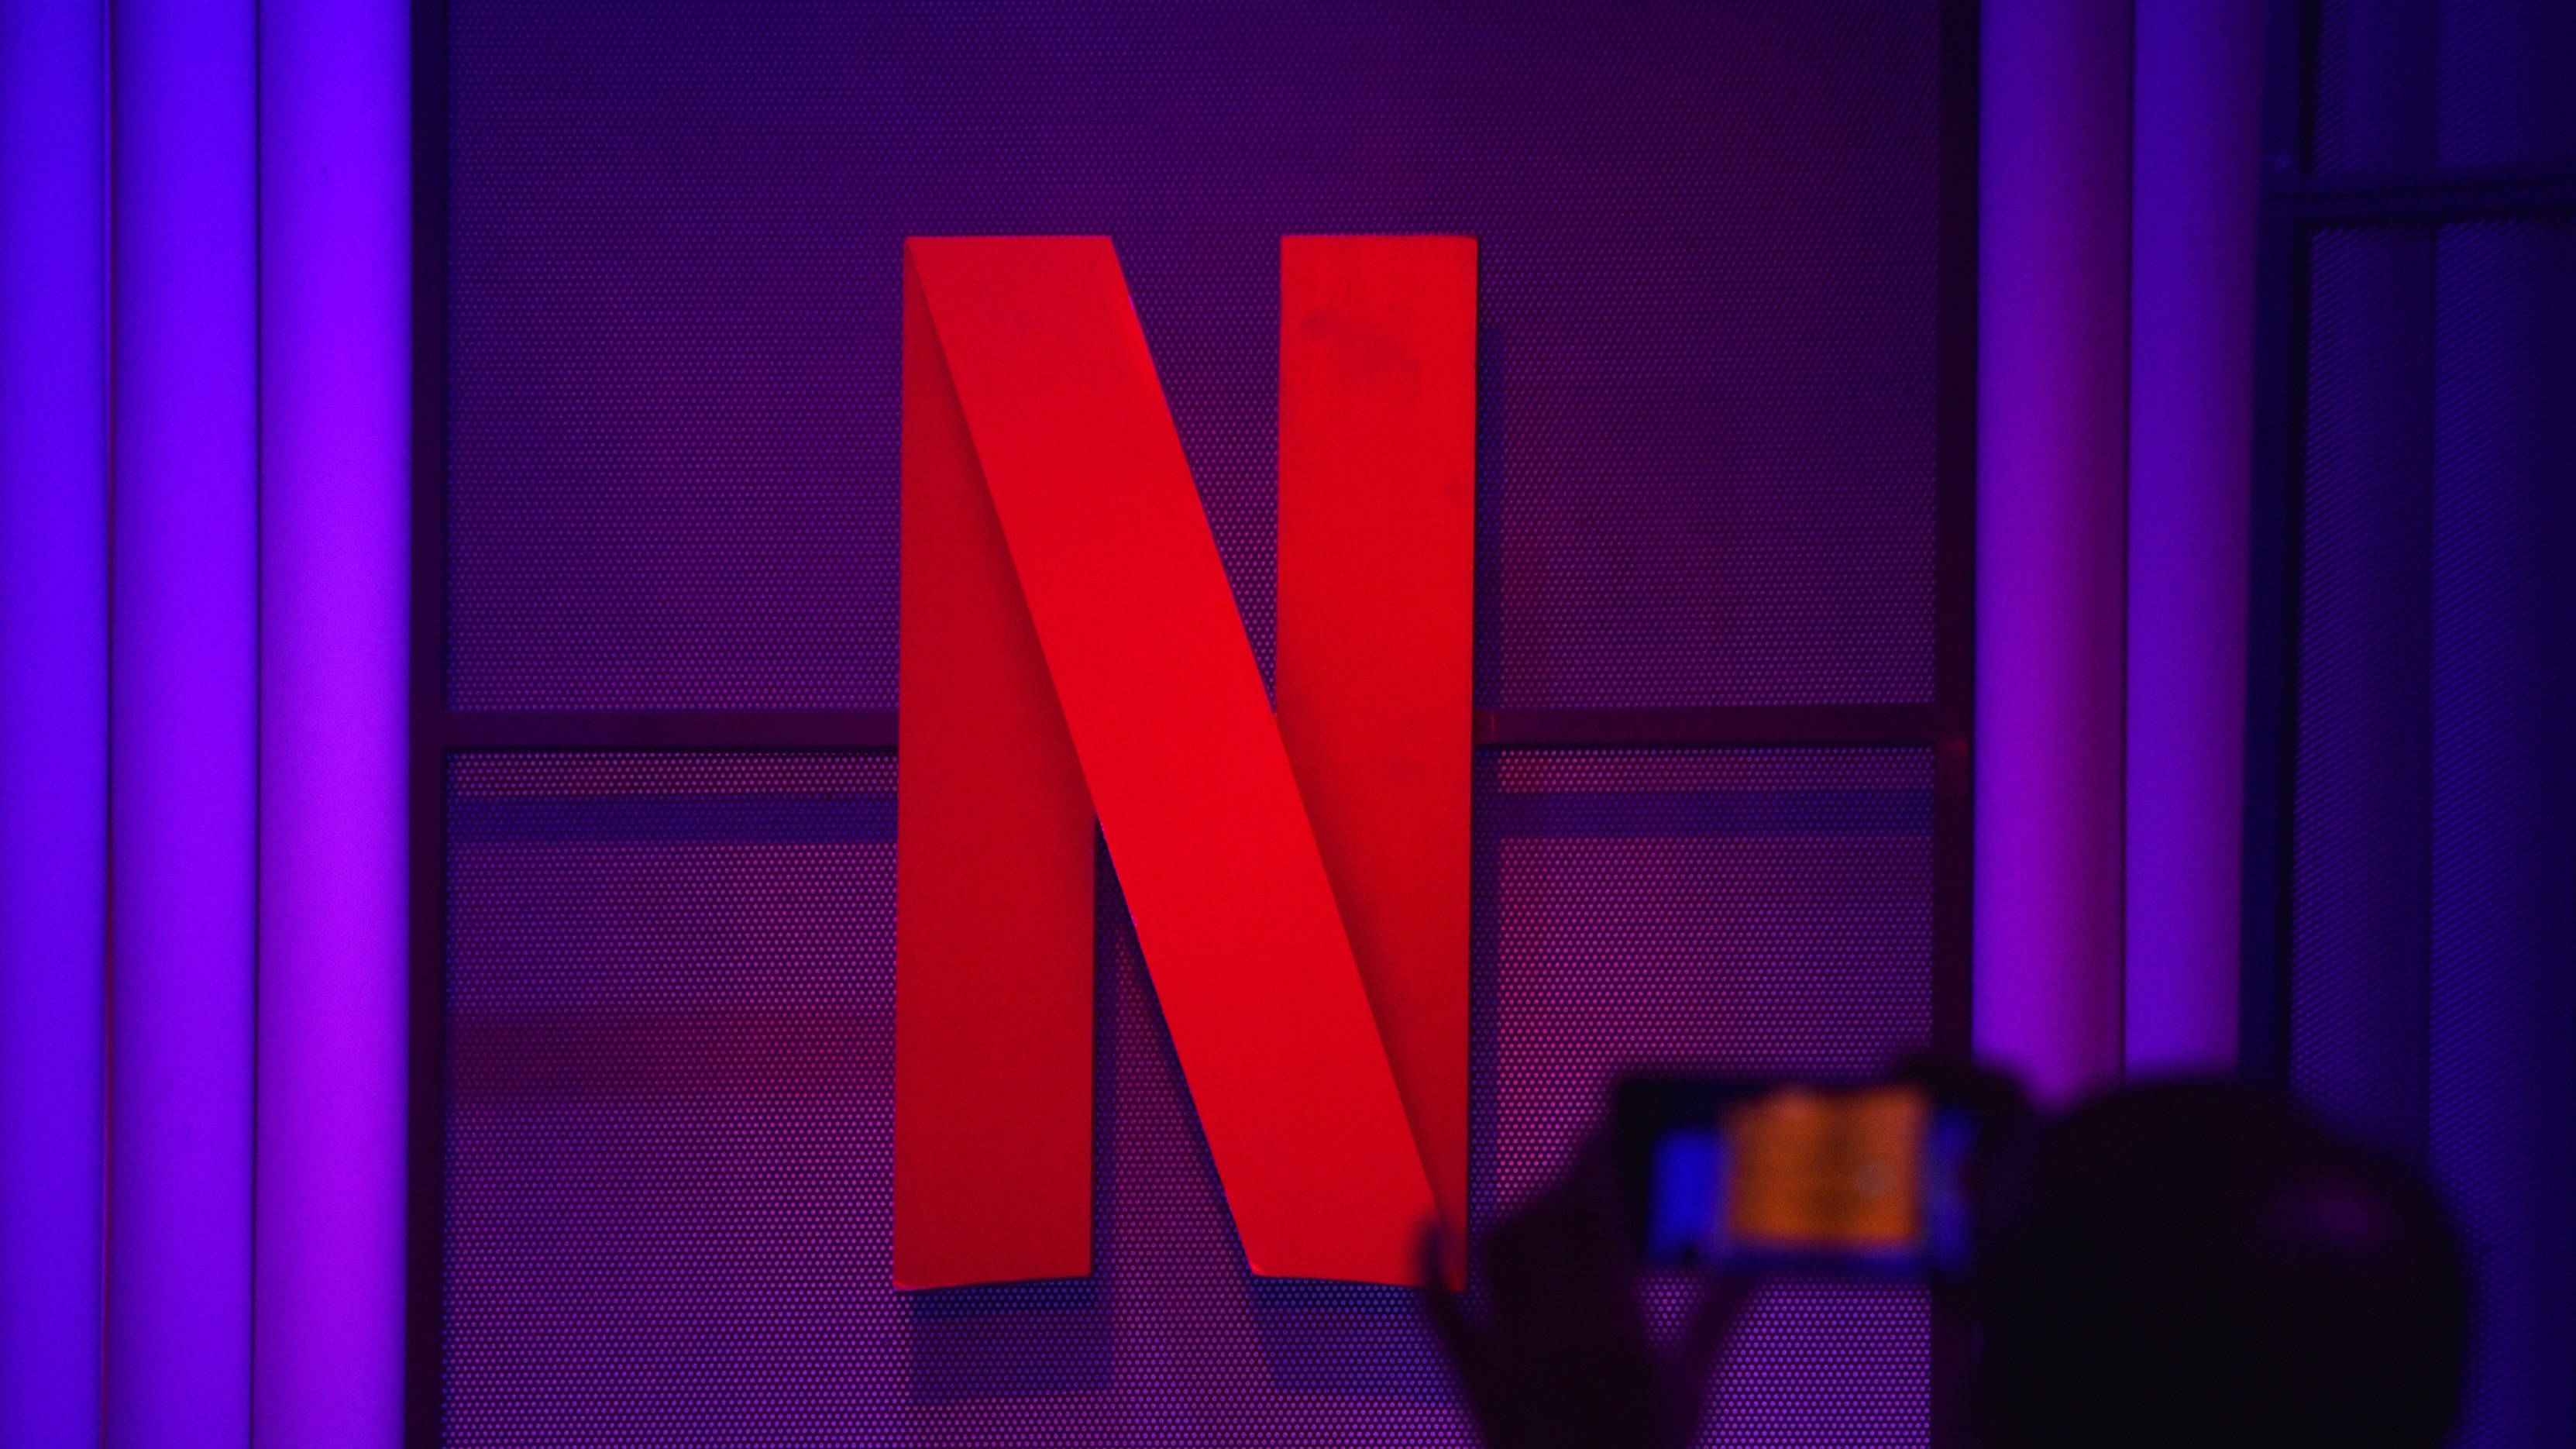 Dan Lin stellt Filmsparte von Netflix neu auf